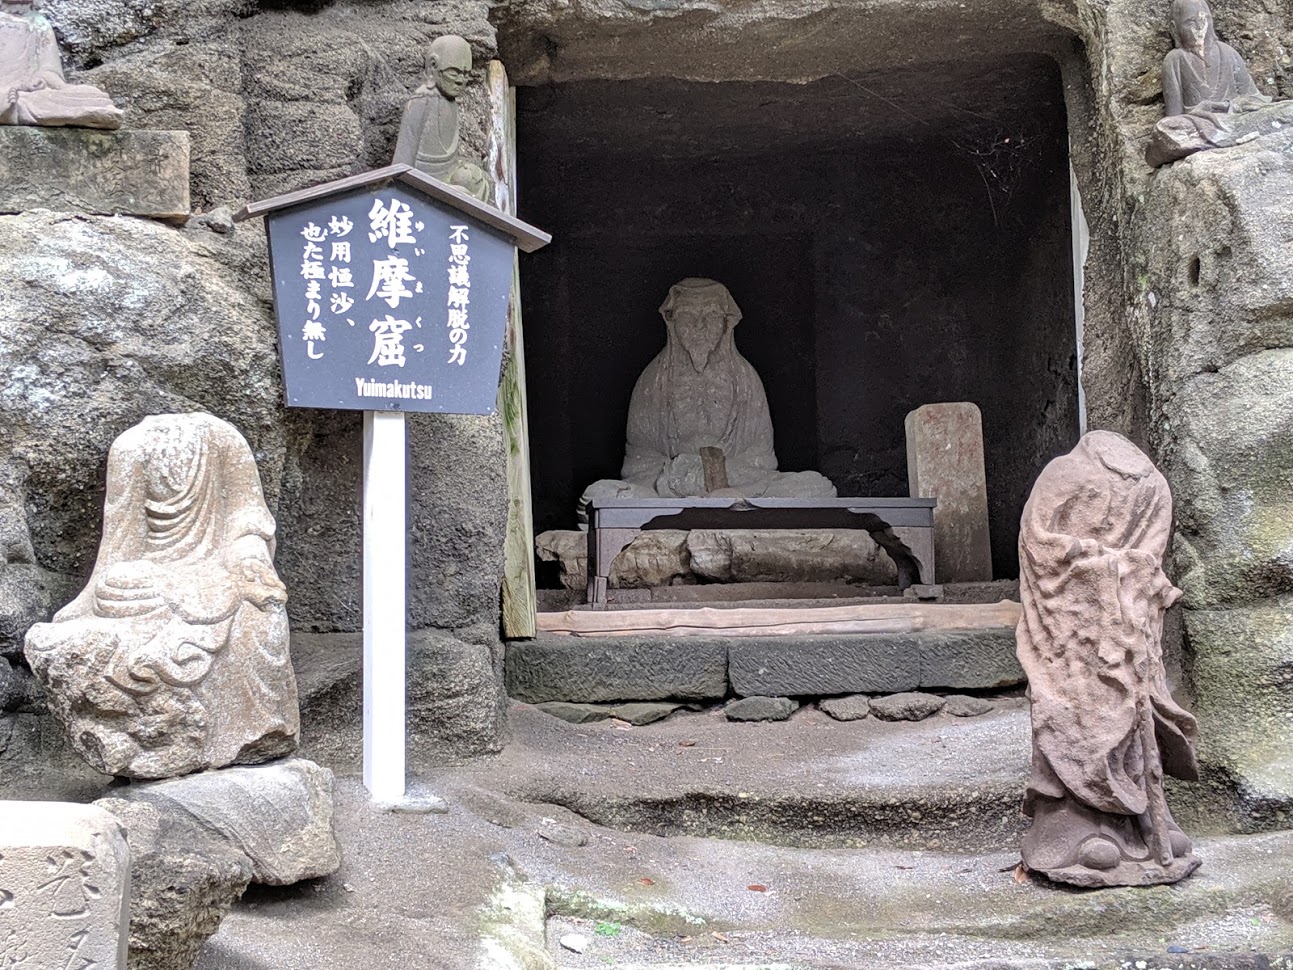 日本一大きな大仏さんがいる日本寺の鋸山に行きました。その二